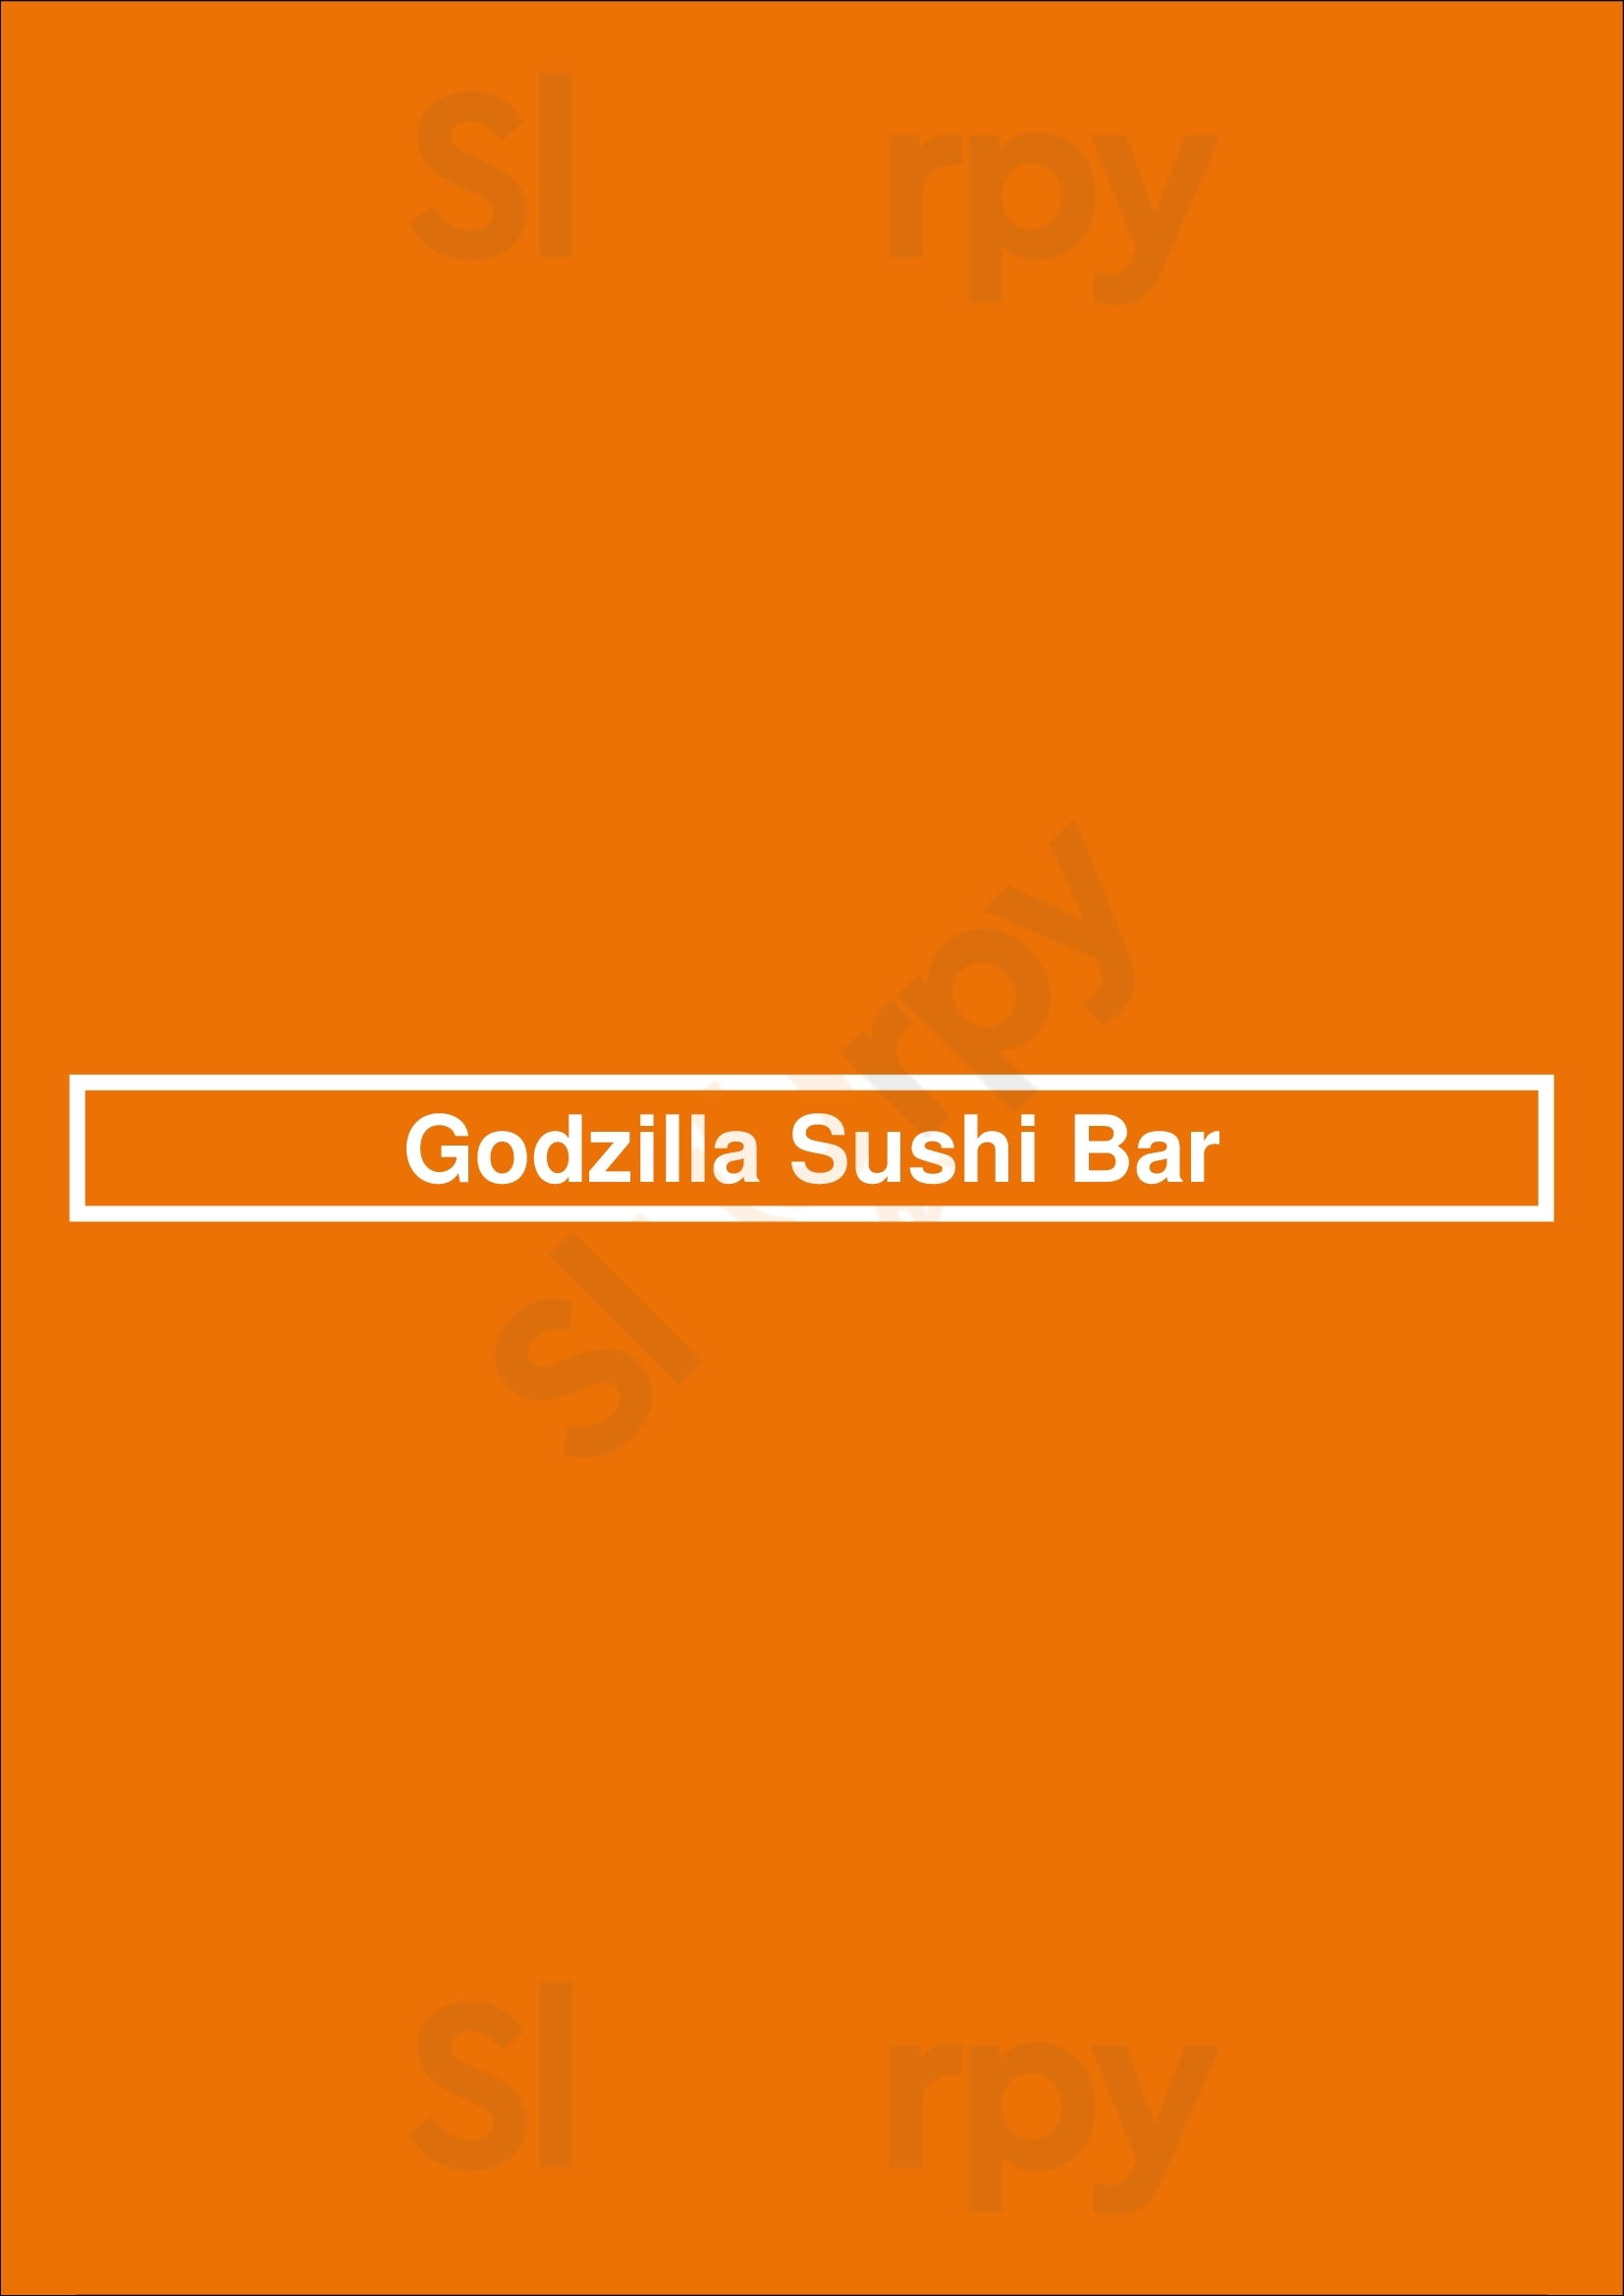 Godzilla Sushi Bar Chicago Menu - 1